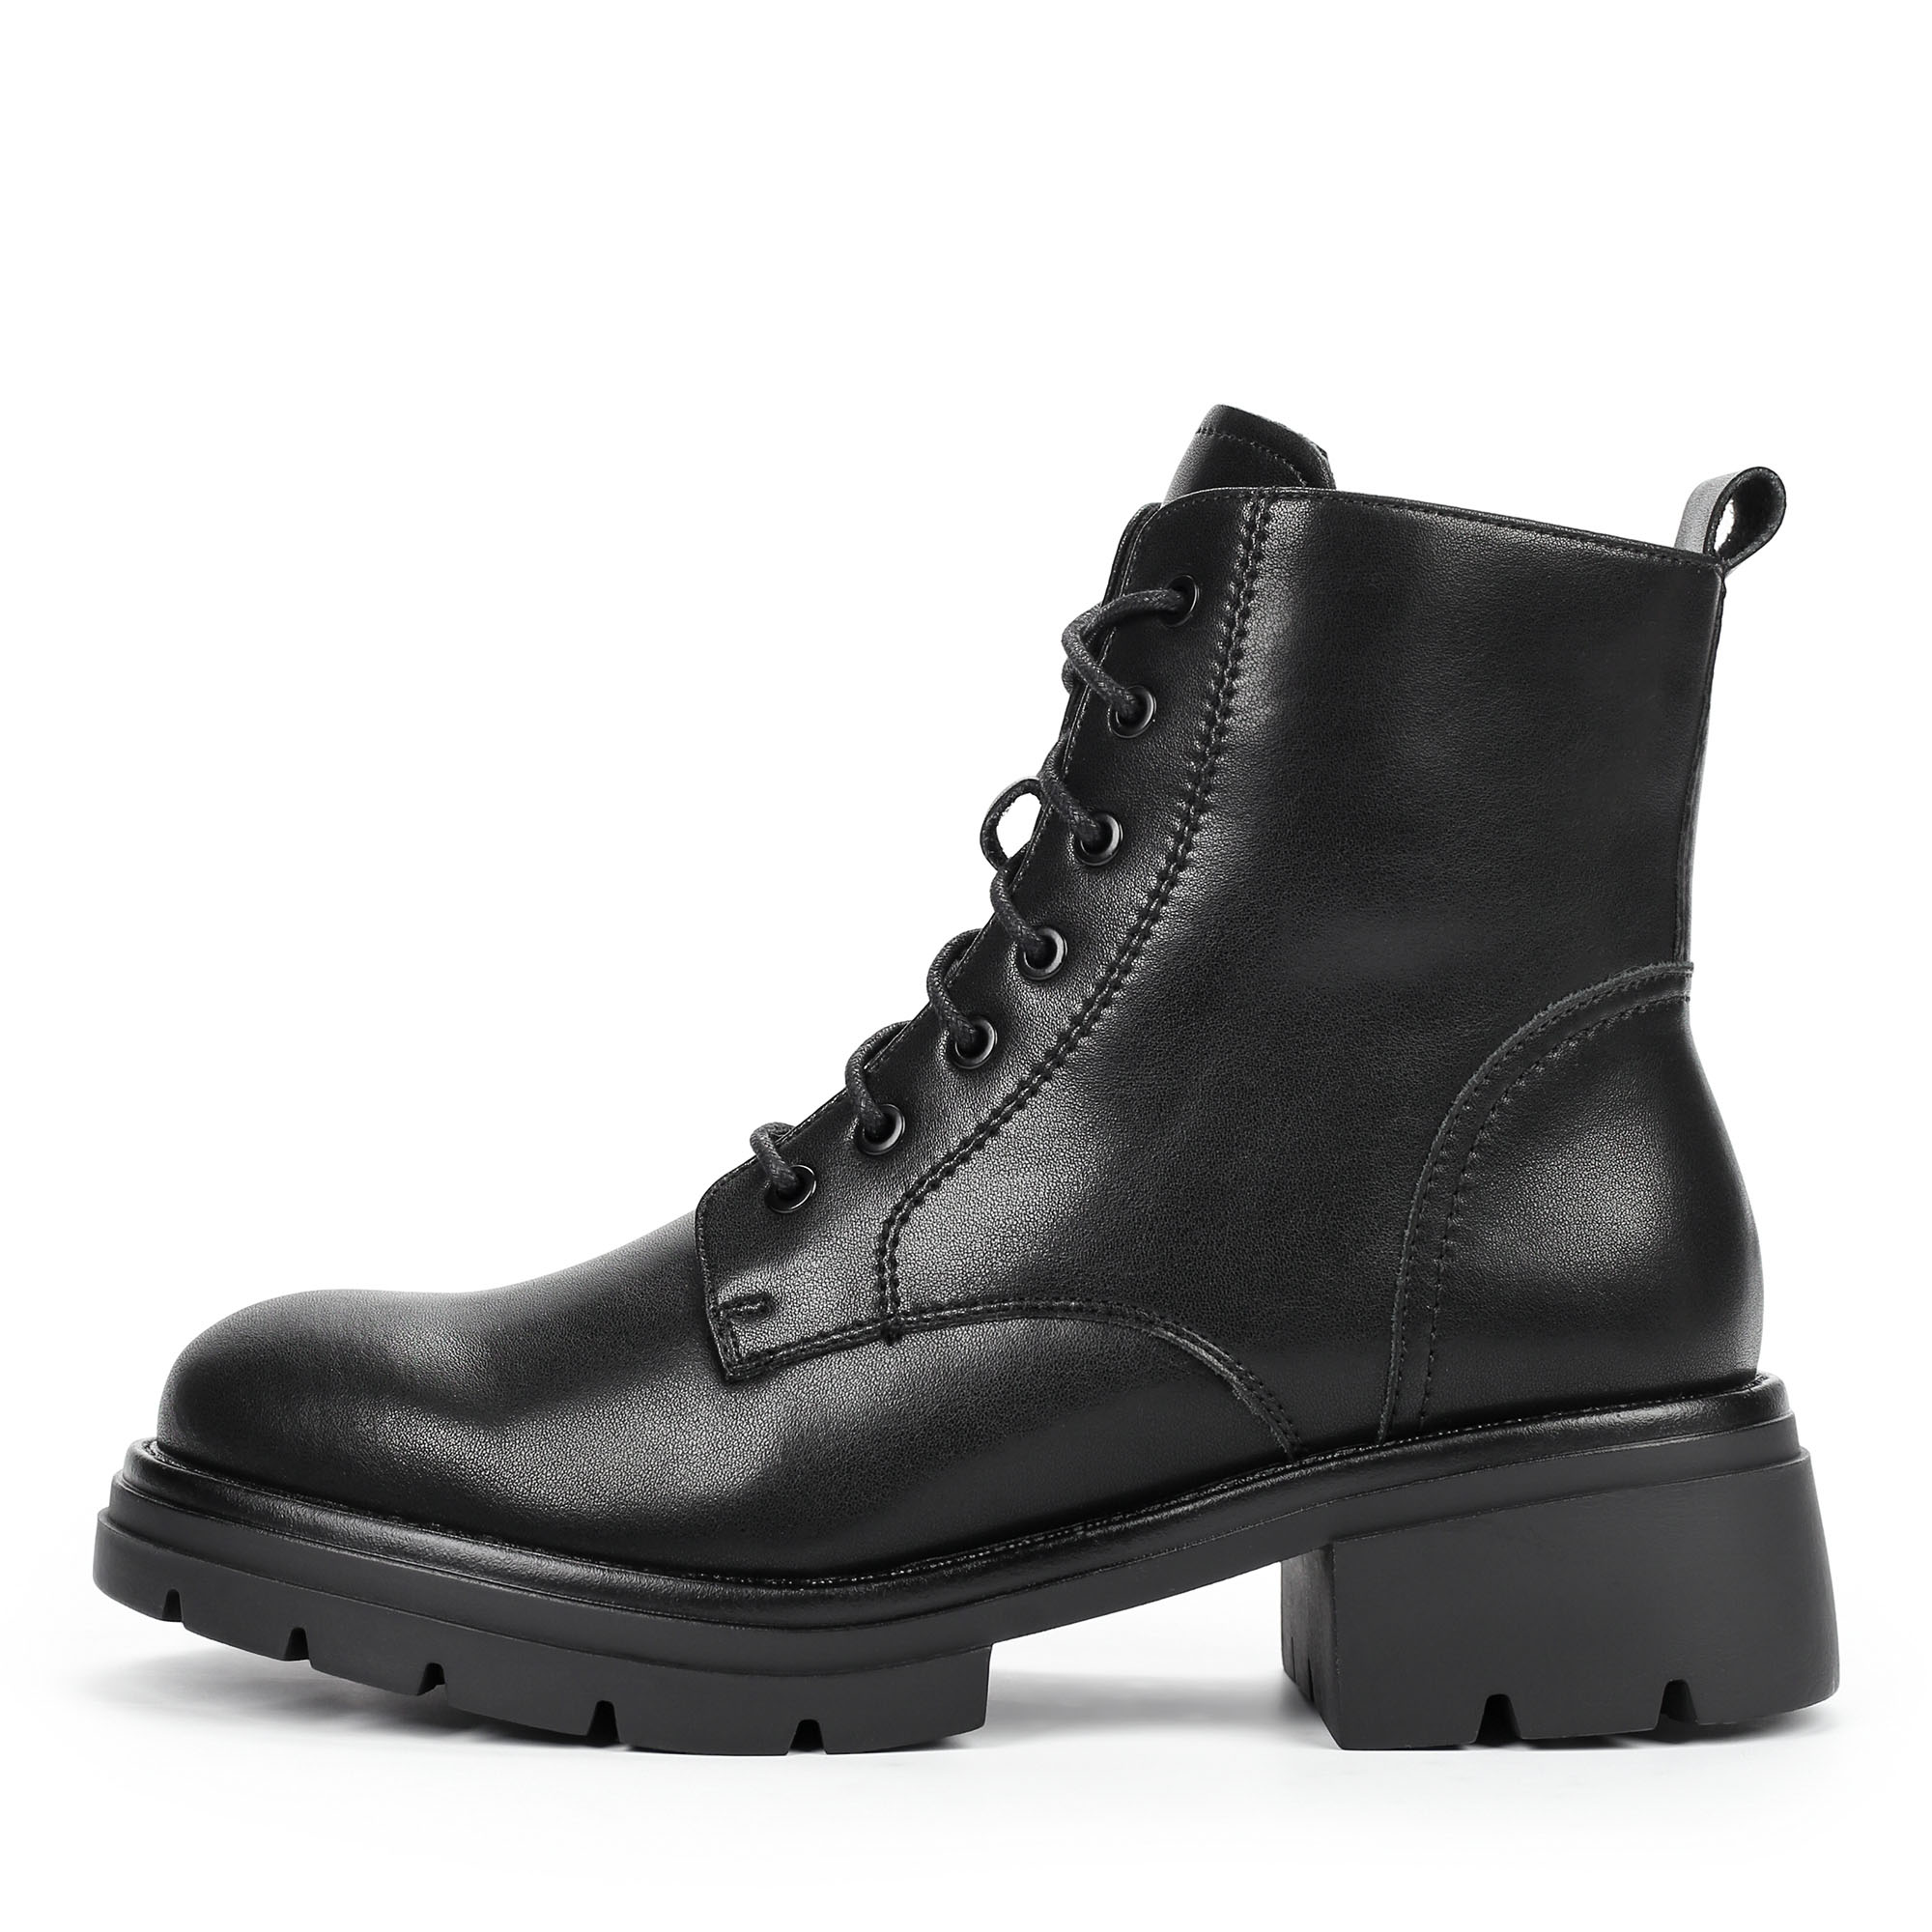 Ботинки Thomas Munz 080-618A-5602, цвет черный, размер 40 - фото 1